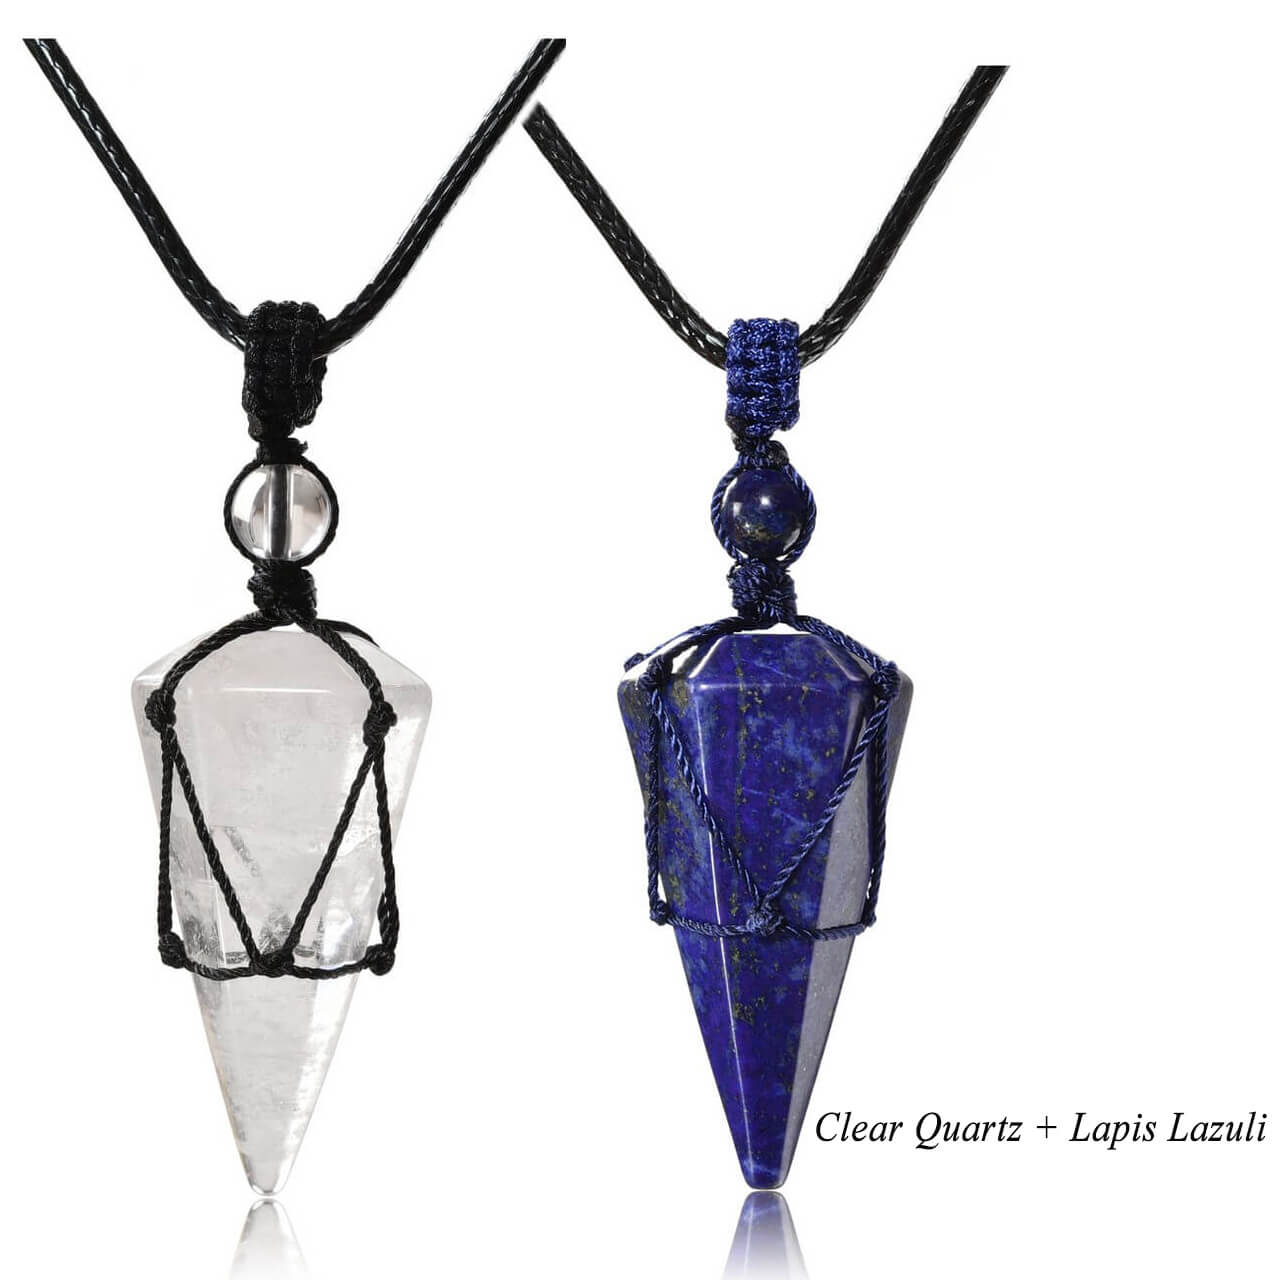 jovivi clear quartz & lapis lazuli pointed necklace for women, front side